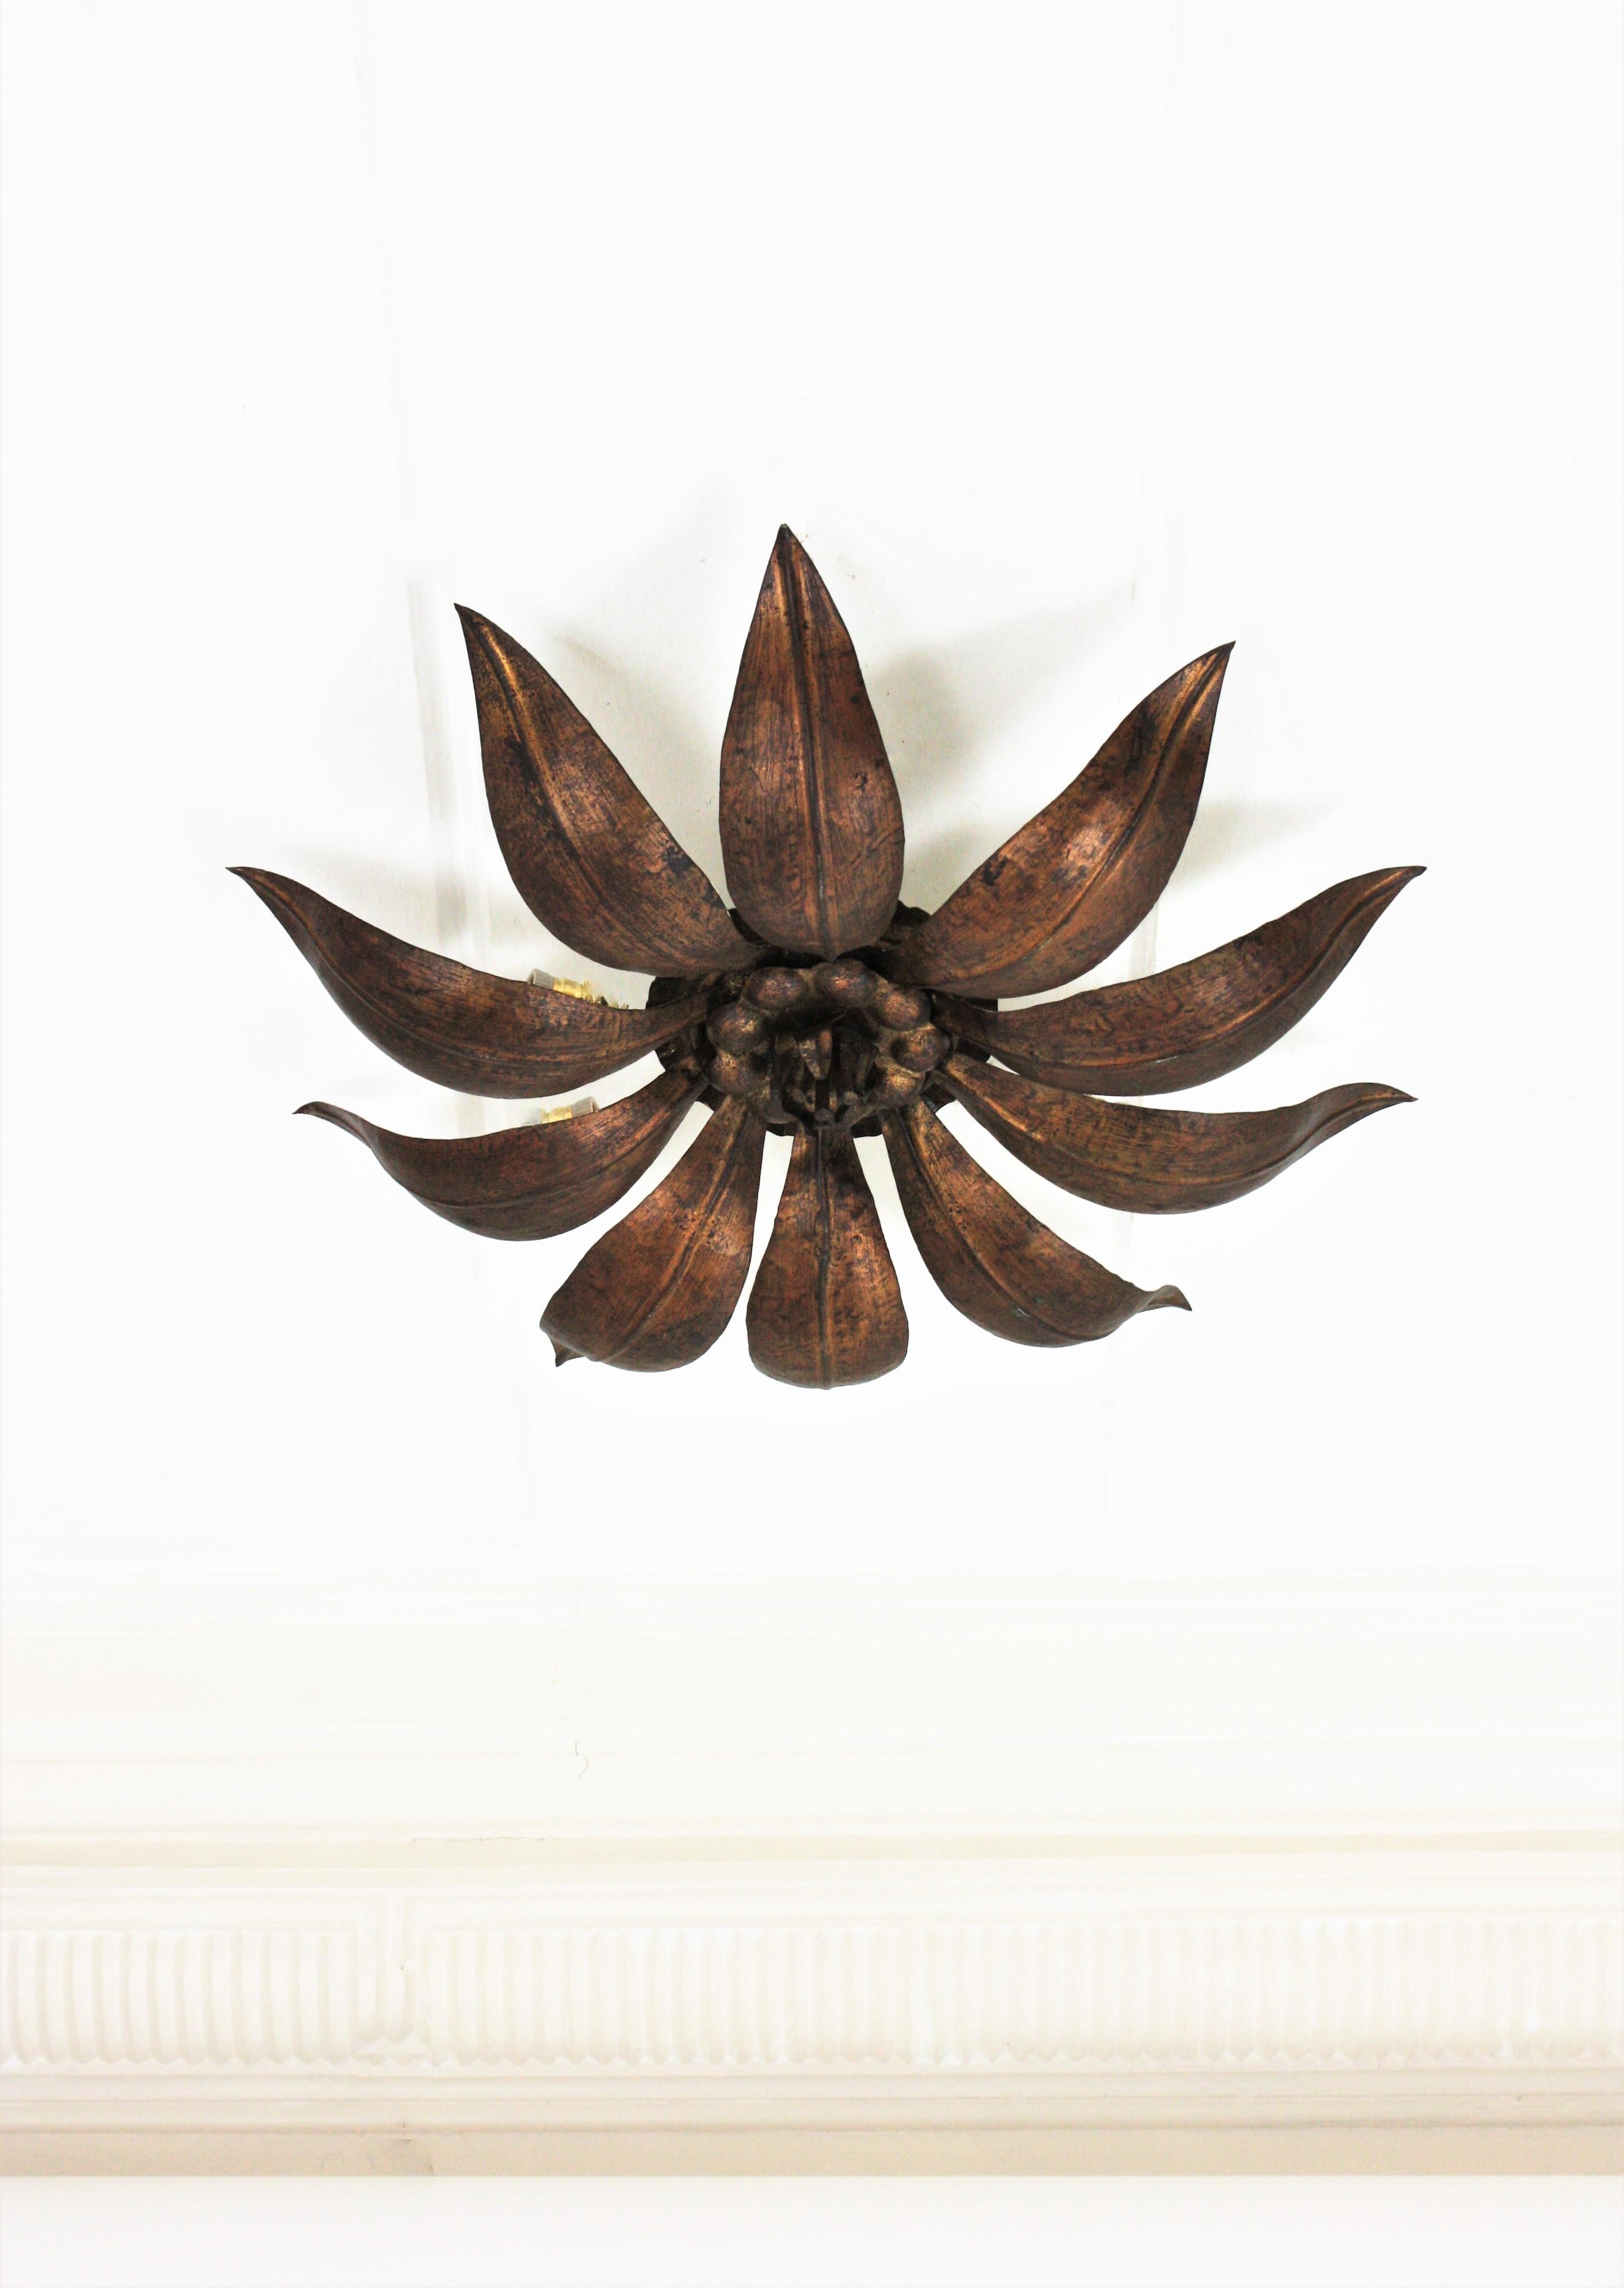 French Sunburst Flower Ceiling Light Fixture in Bronze Gilt Iron, 1940s For Sale 5